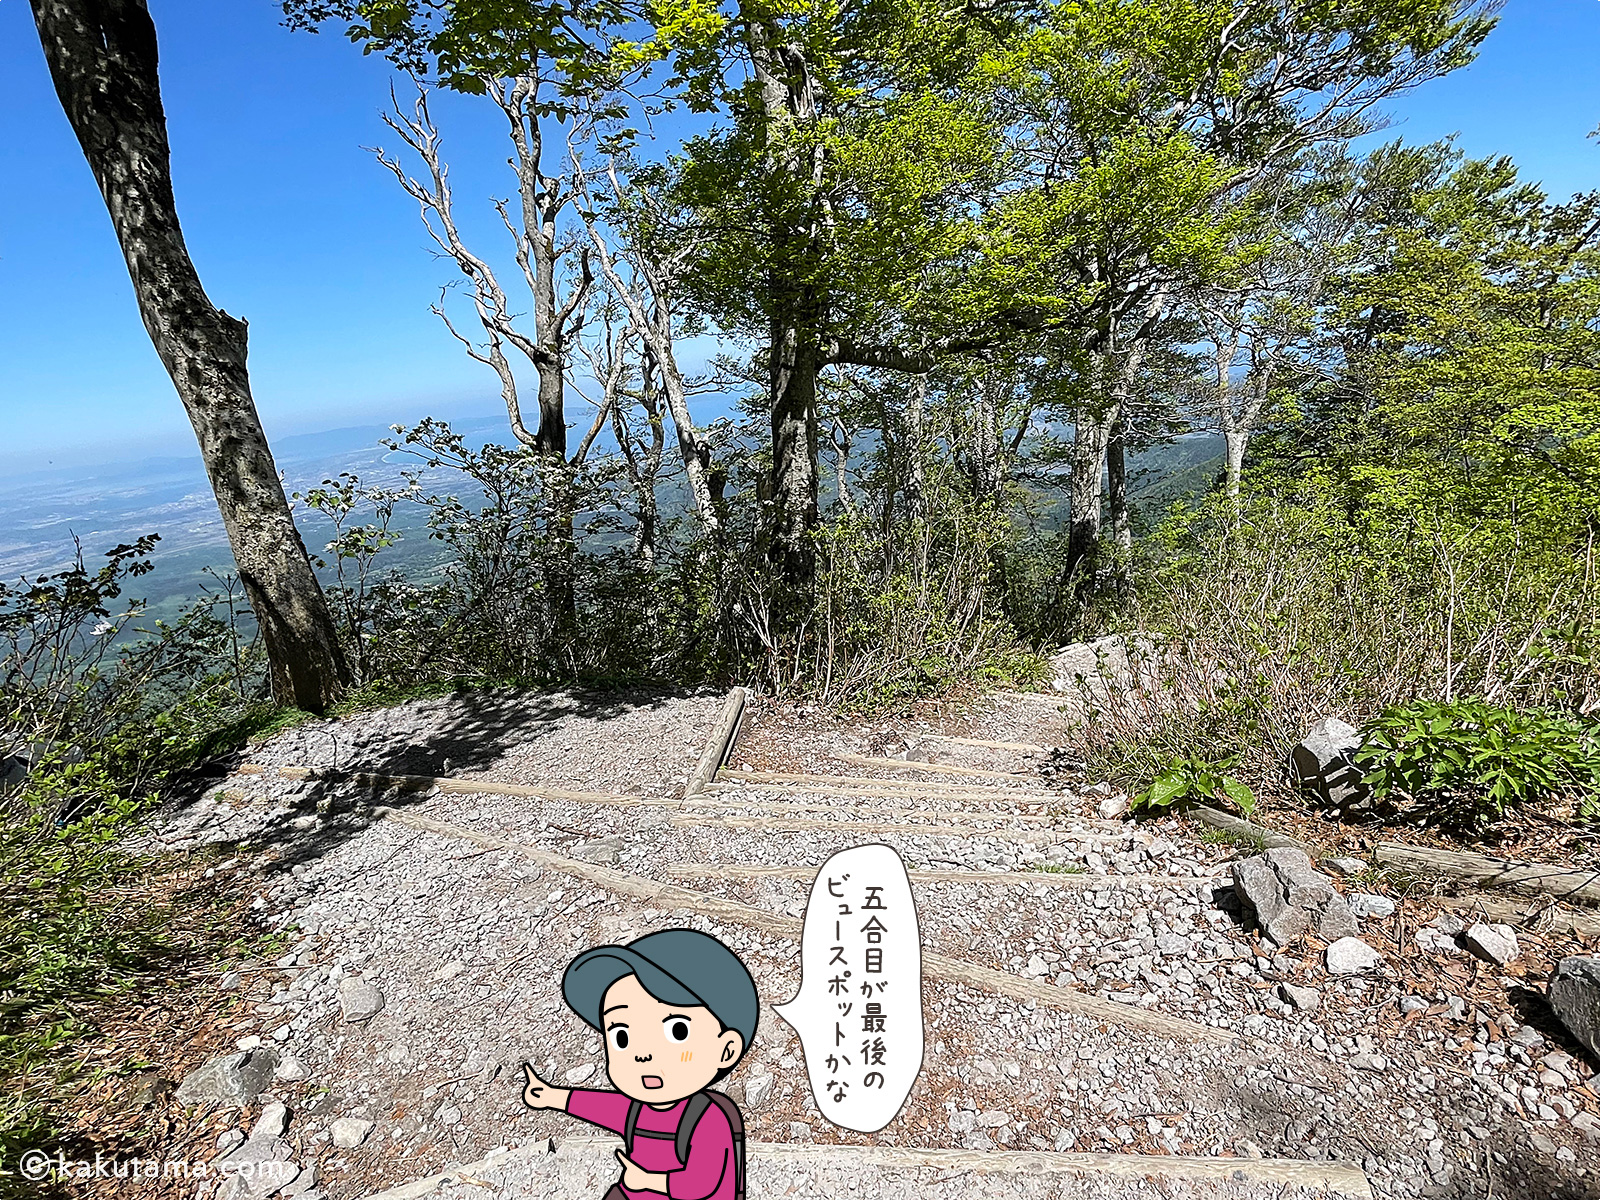 鳥取大山の夏山登山道、五合目からの長めの写真と登山者のイラスト